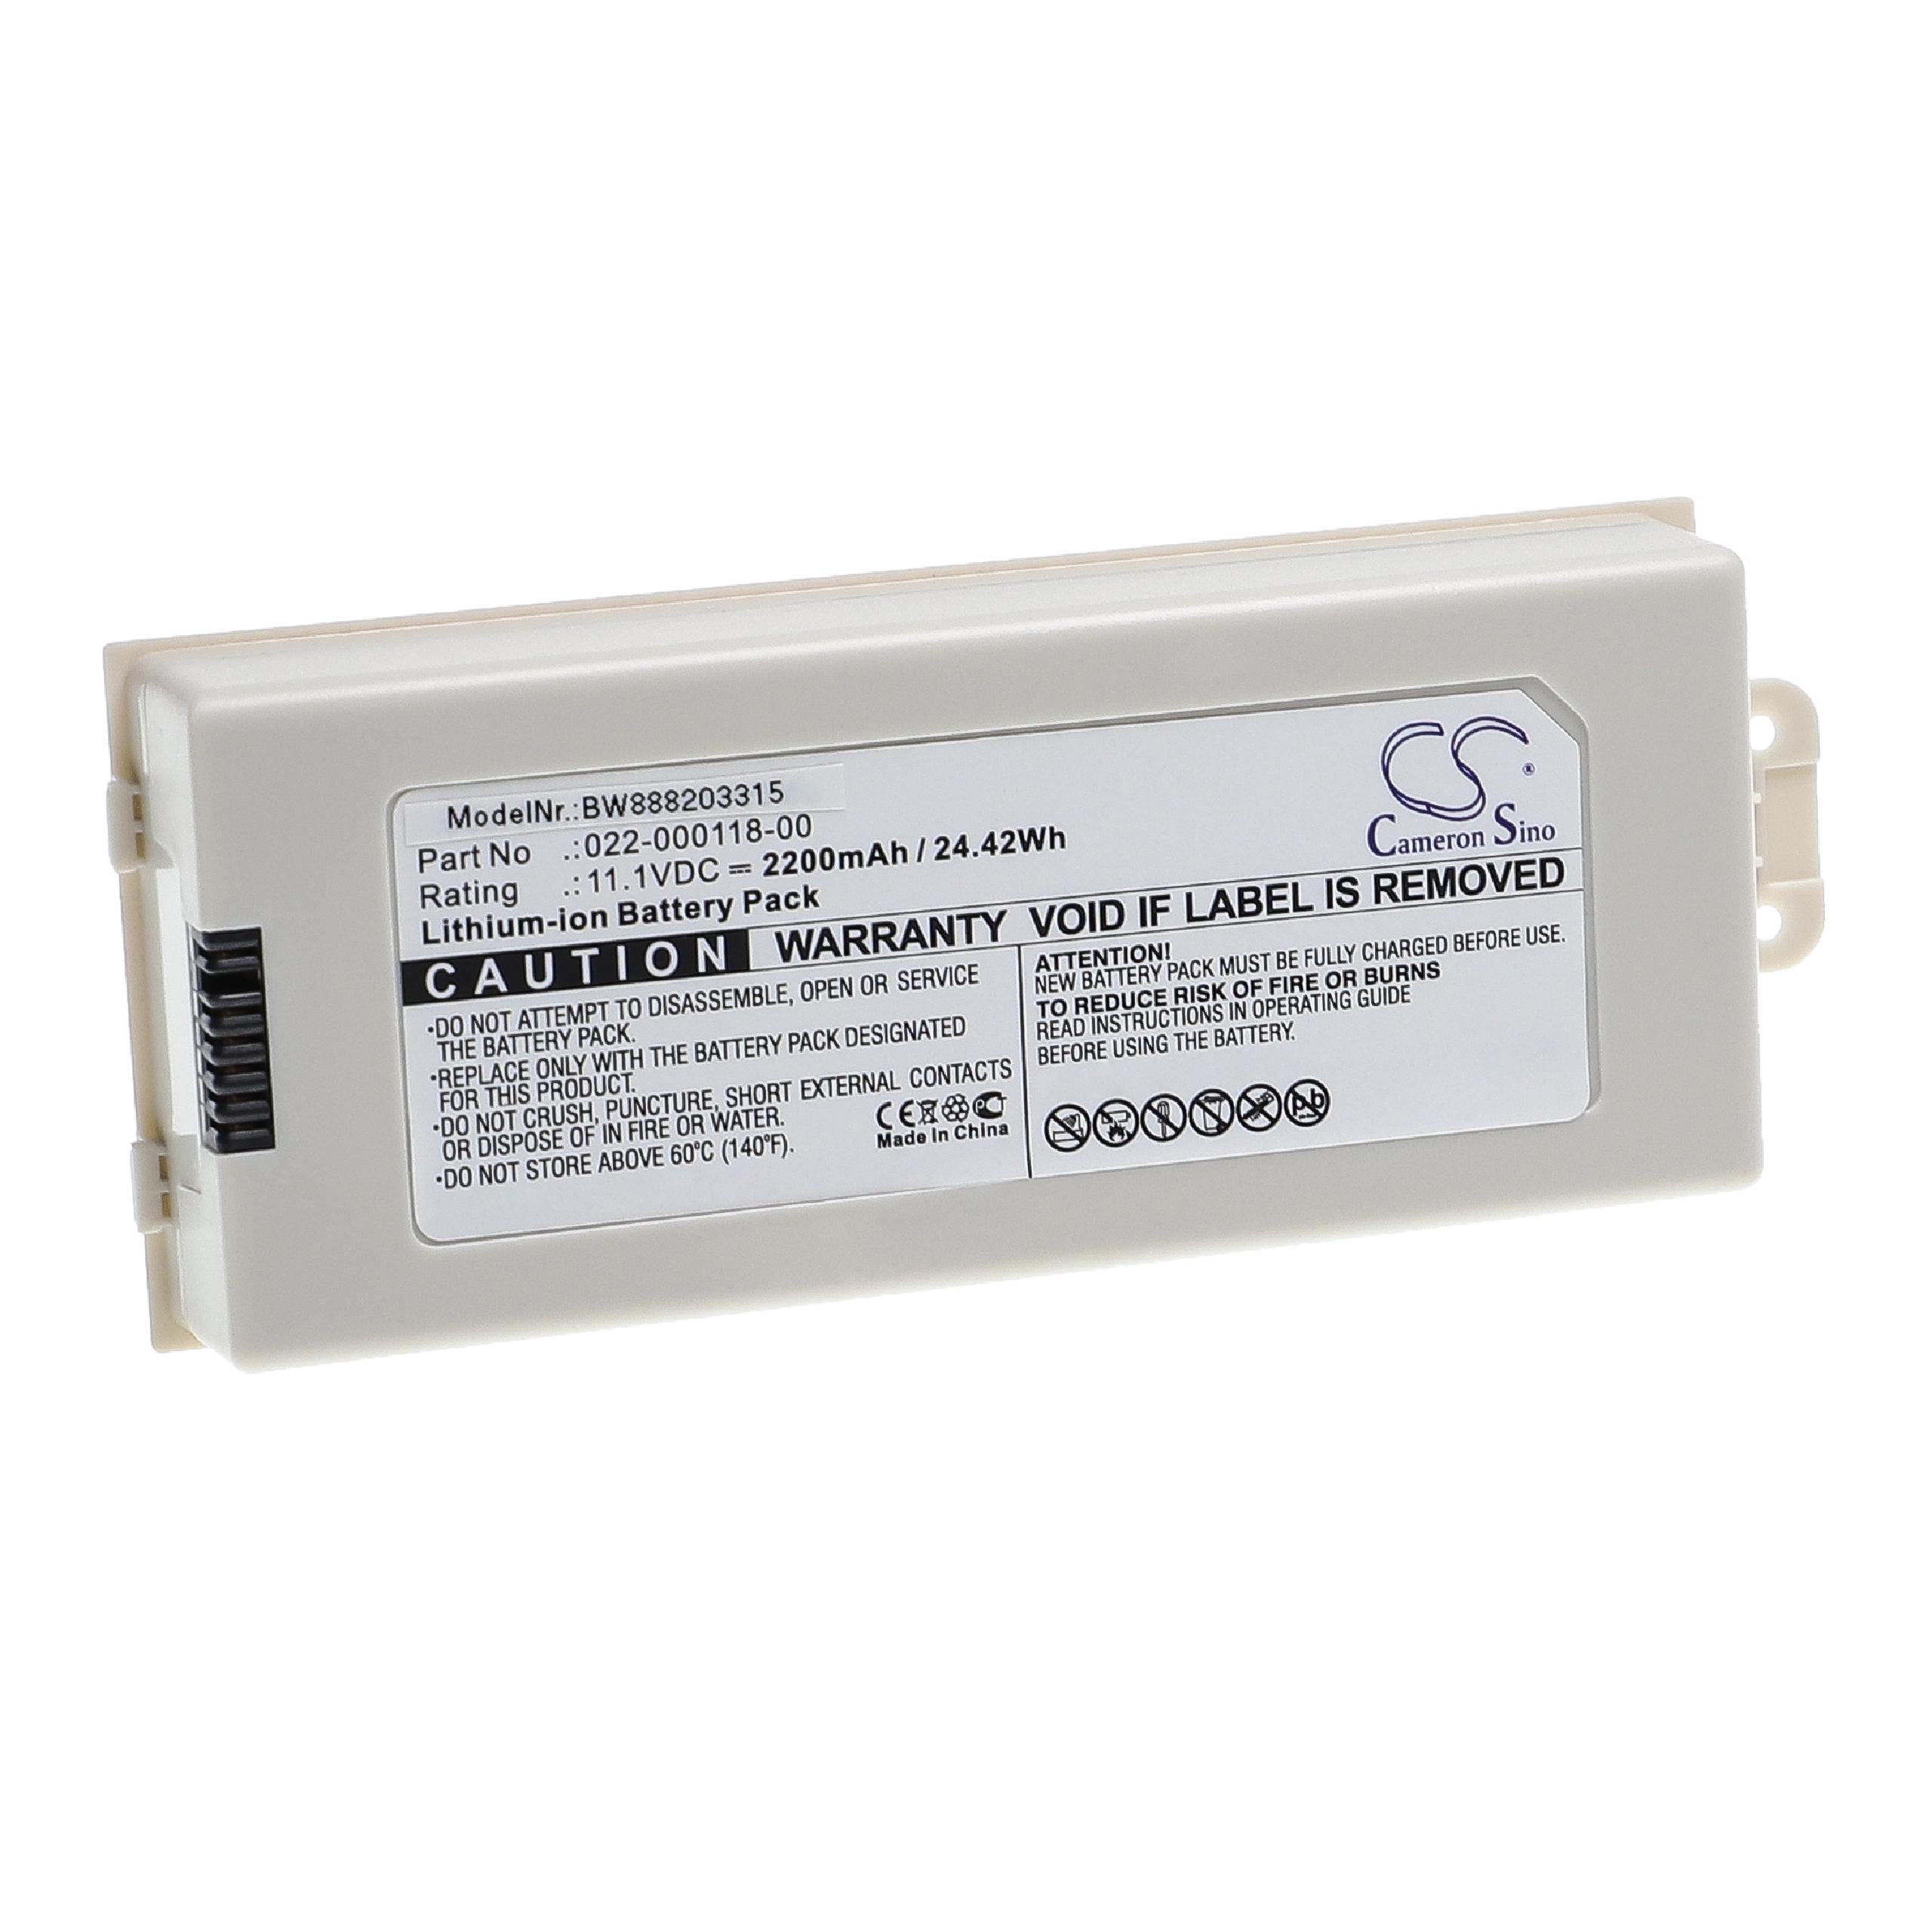 Batterie remplace Comen 022-000118-00, 022-000108-00 pour appareil médical - 2200mAh 11,1V Li-ion